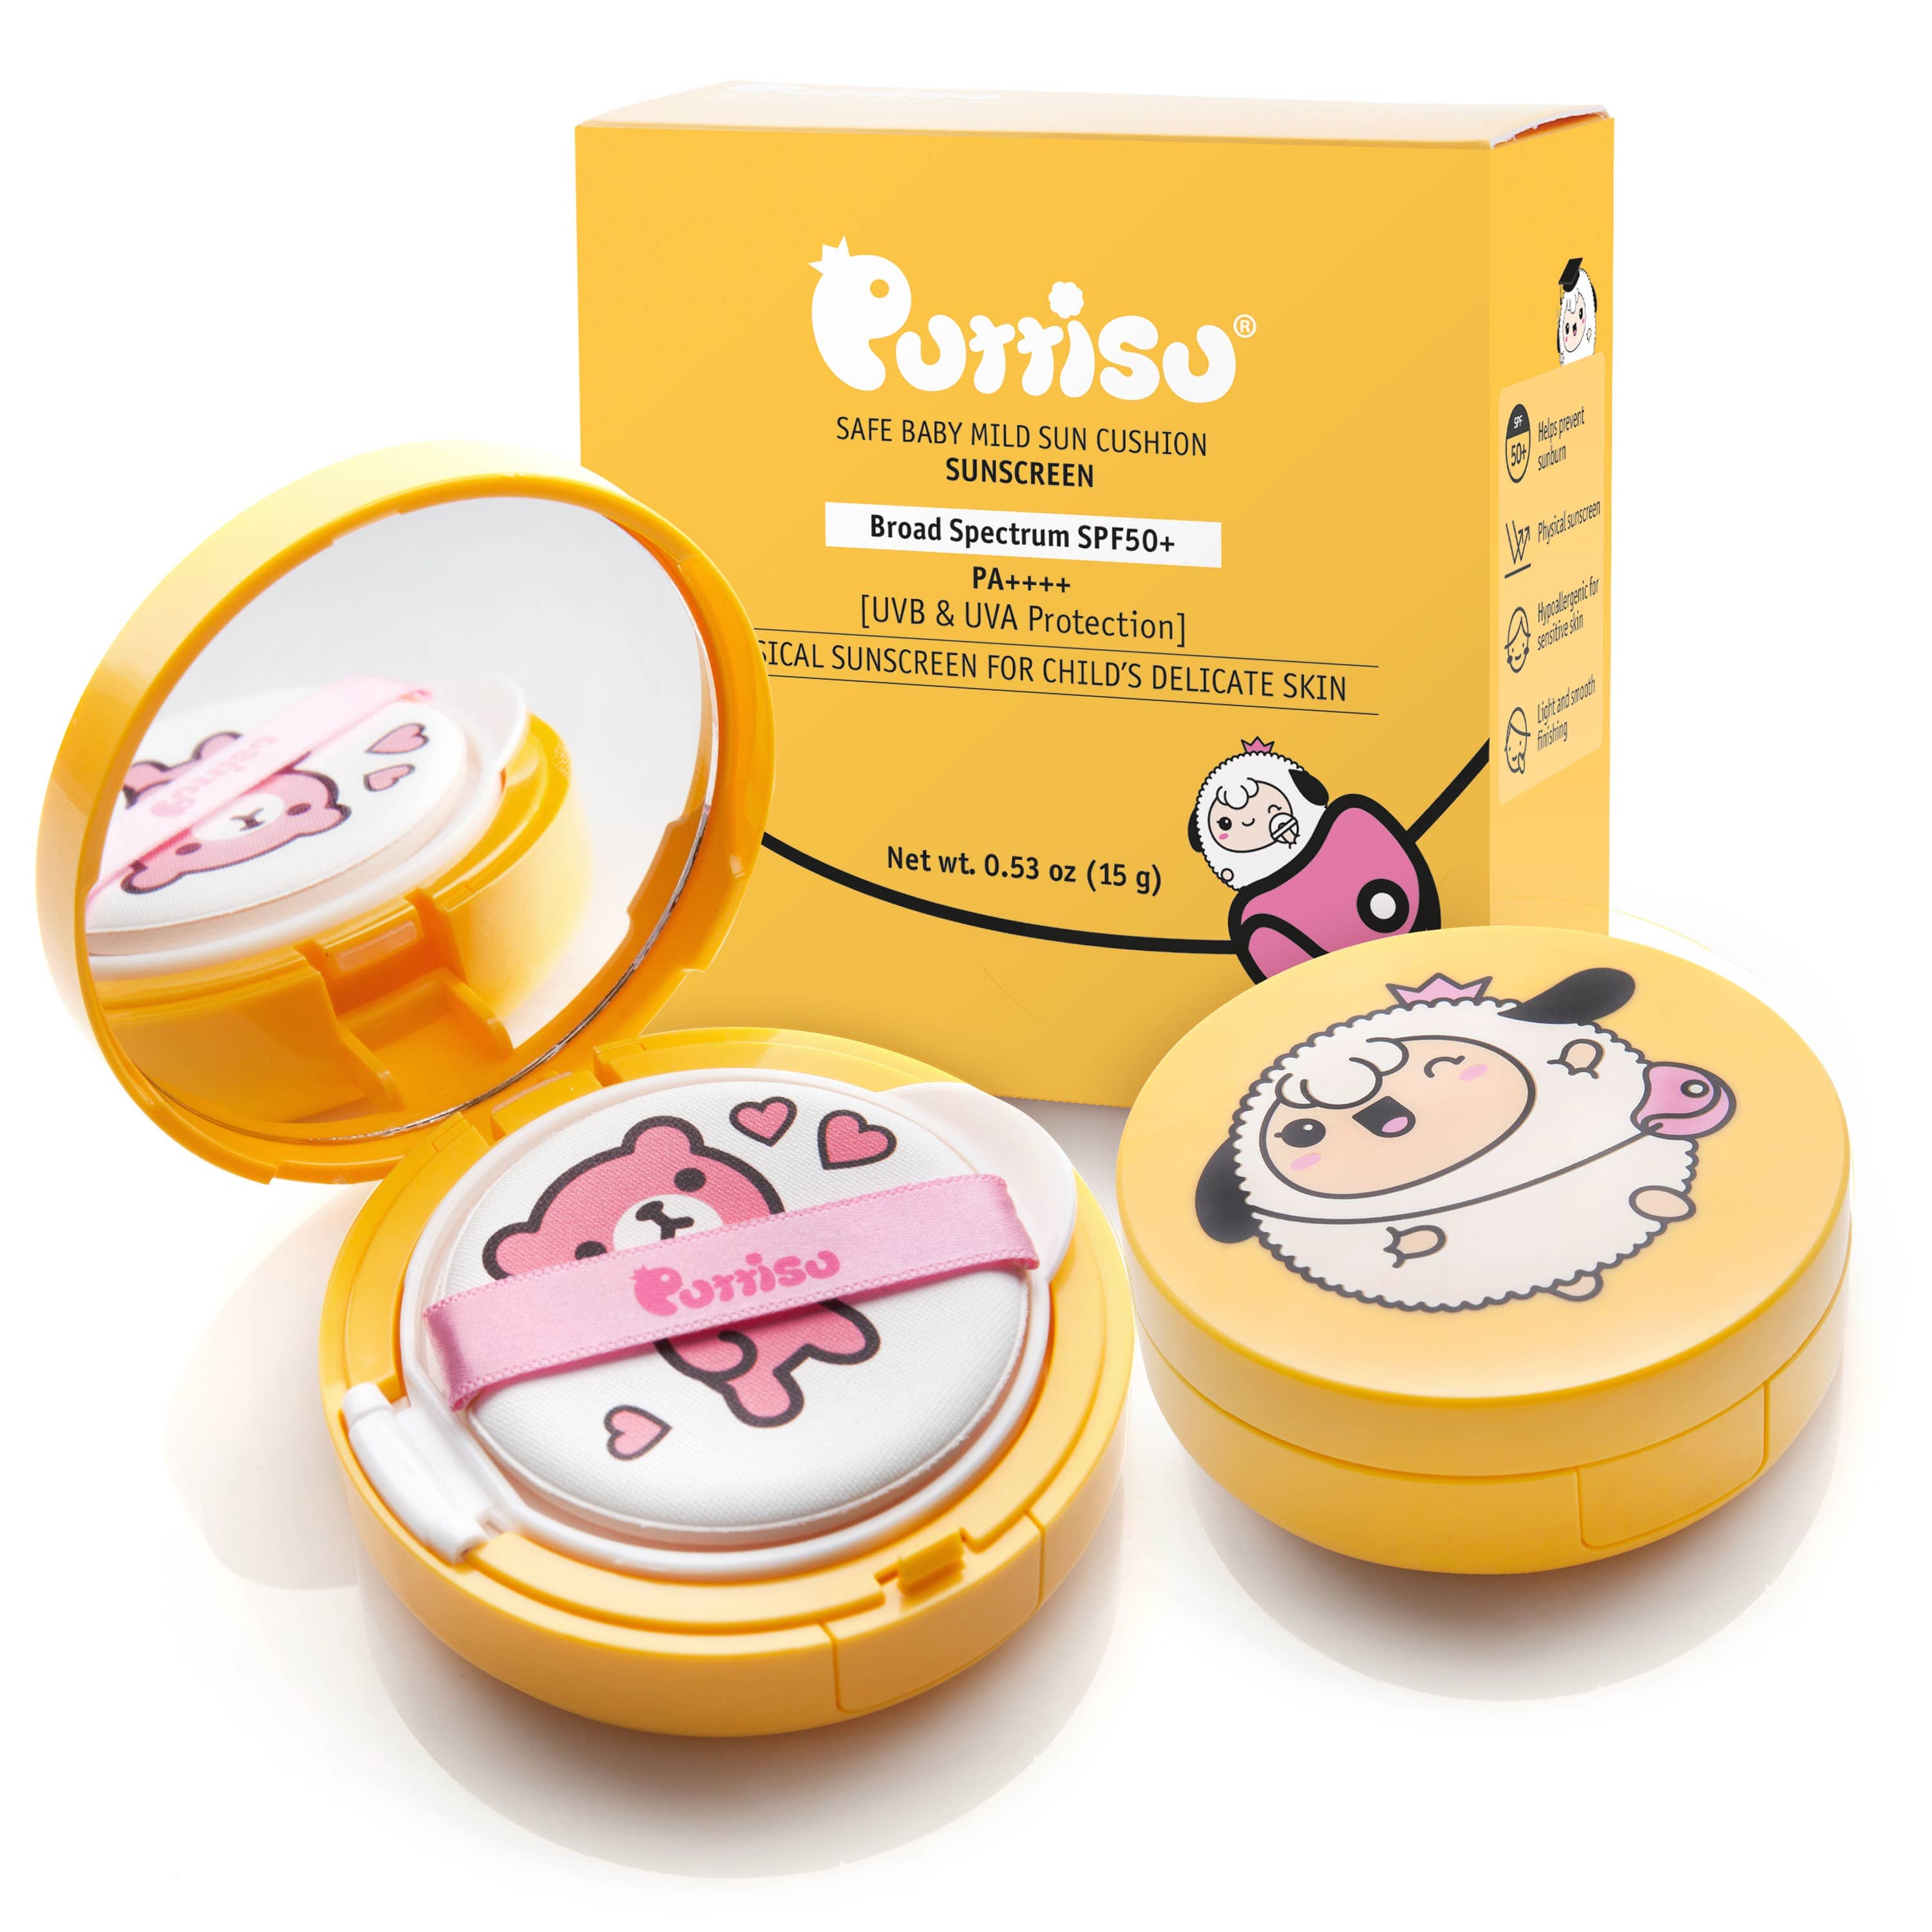 Puttisu SUN CUSHION- Safe Baby Mild Sunscreen SPF 50+ Kawaii Gifts